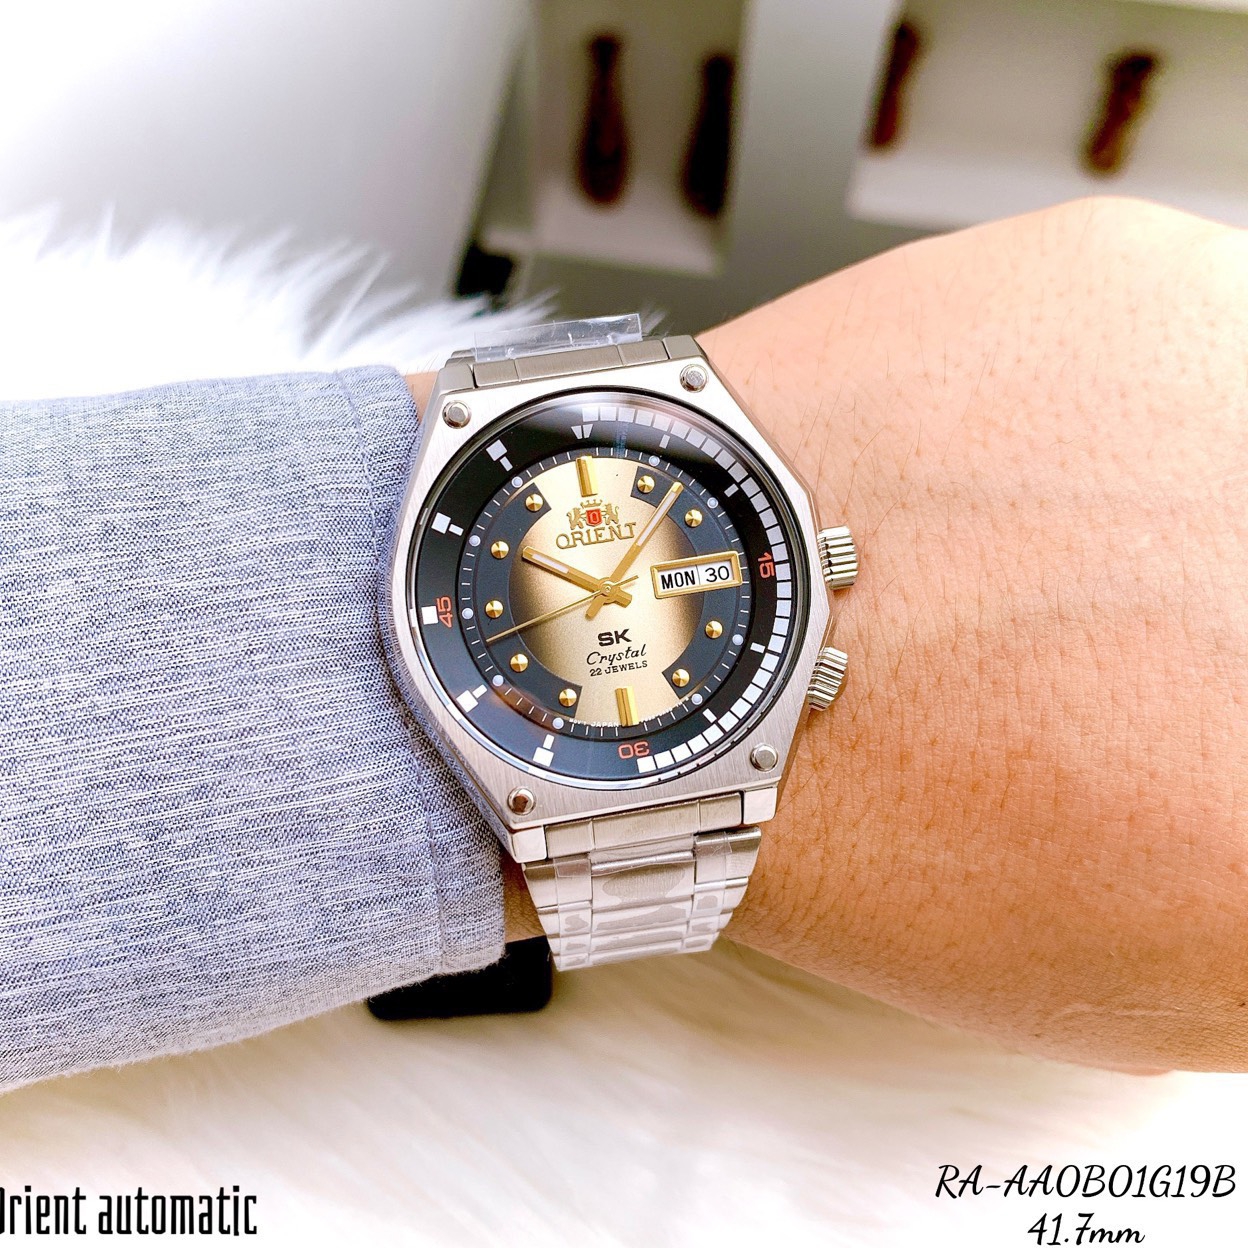 đồng hồ nam chính hãng orient sk mặt vàng ra-aa0b01g19b bản mới size 42,lịch ngày-máy cơ tự động automatic-dây kim loại thép cao cấp 3